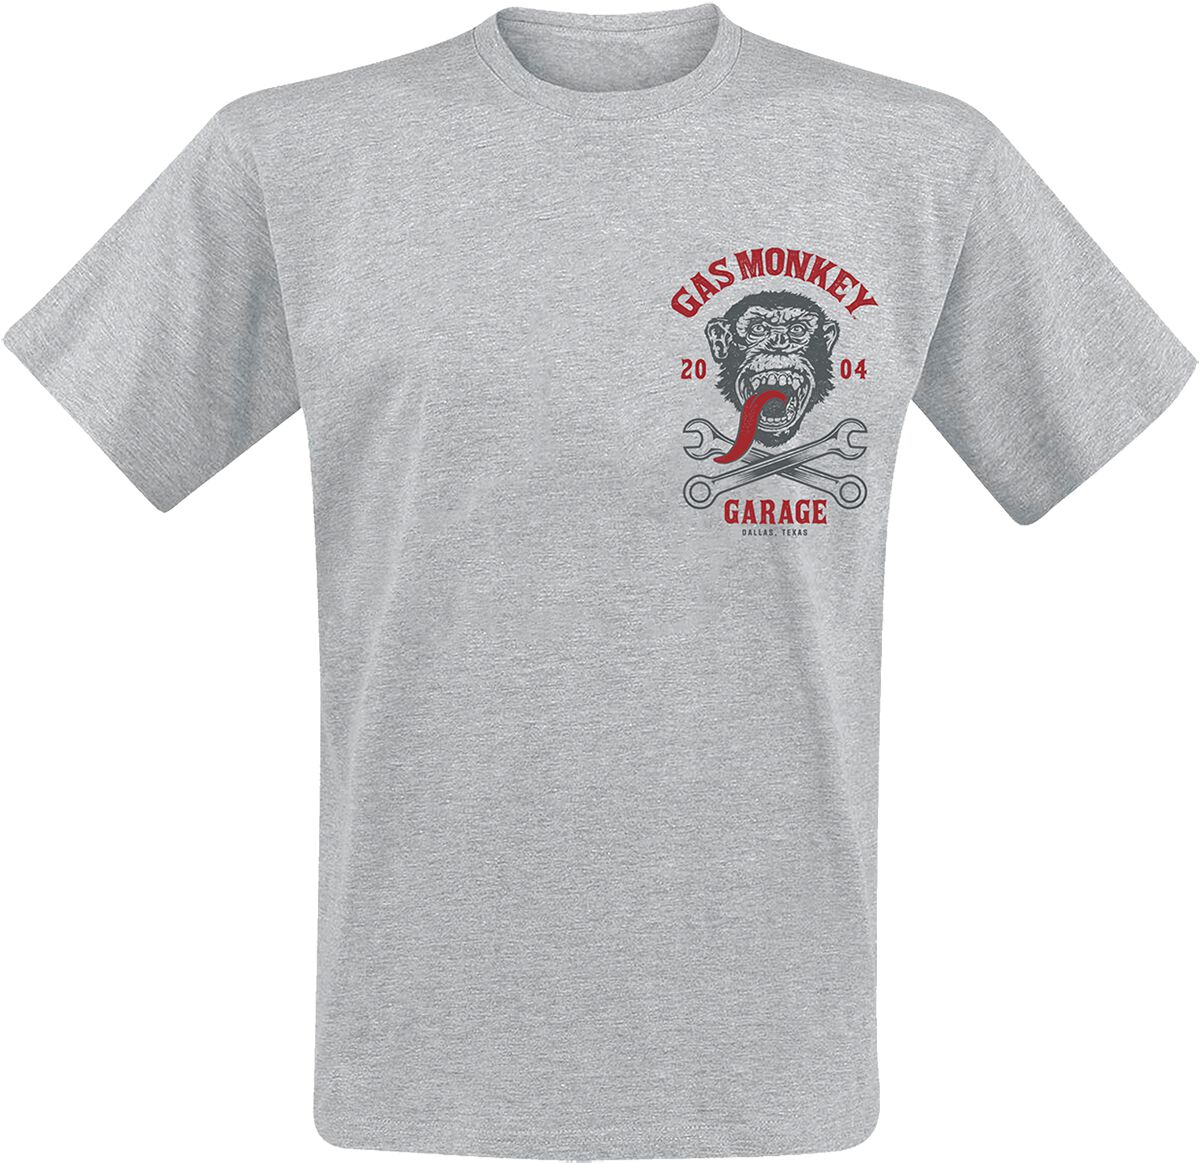 Gas Monkey Garage T-Shirt - Spanners 2004 - M bis XXL - für Männer - Größe XXL - grau  - Lizenzierter Fanartikel